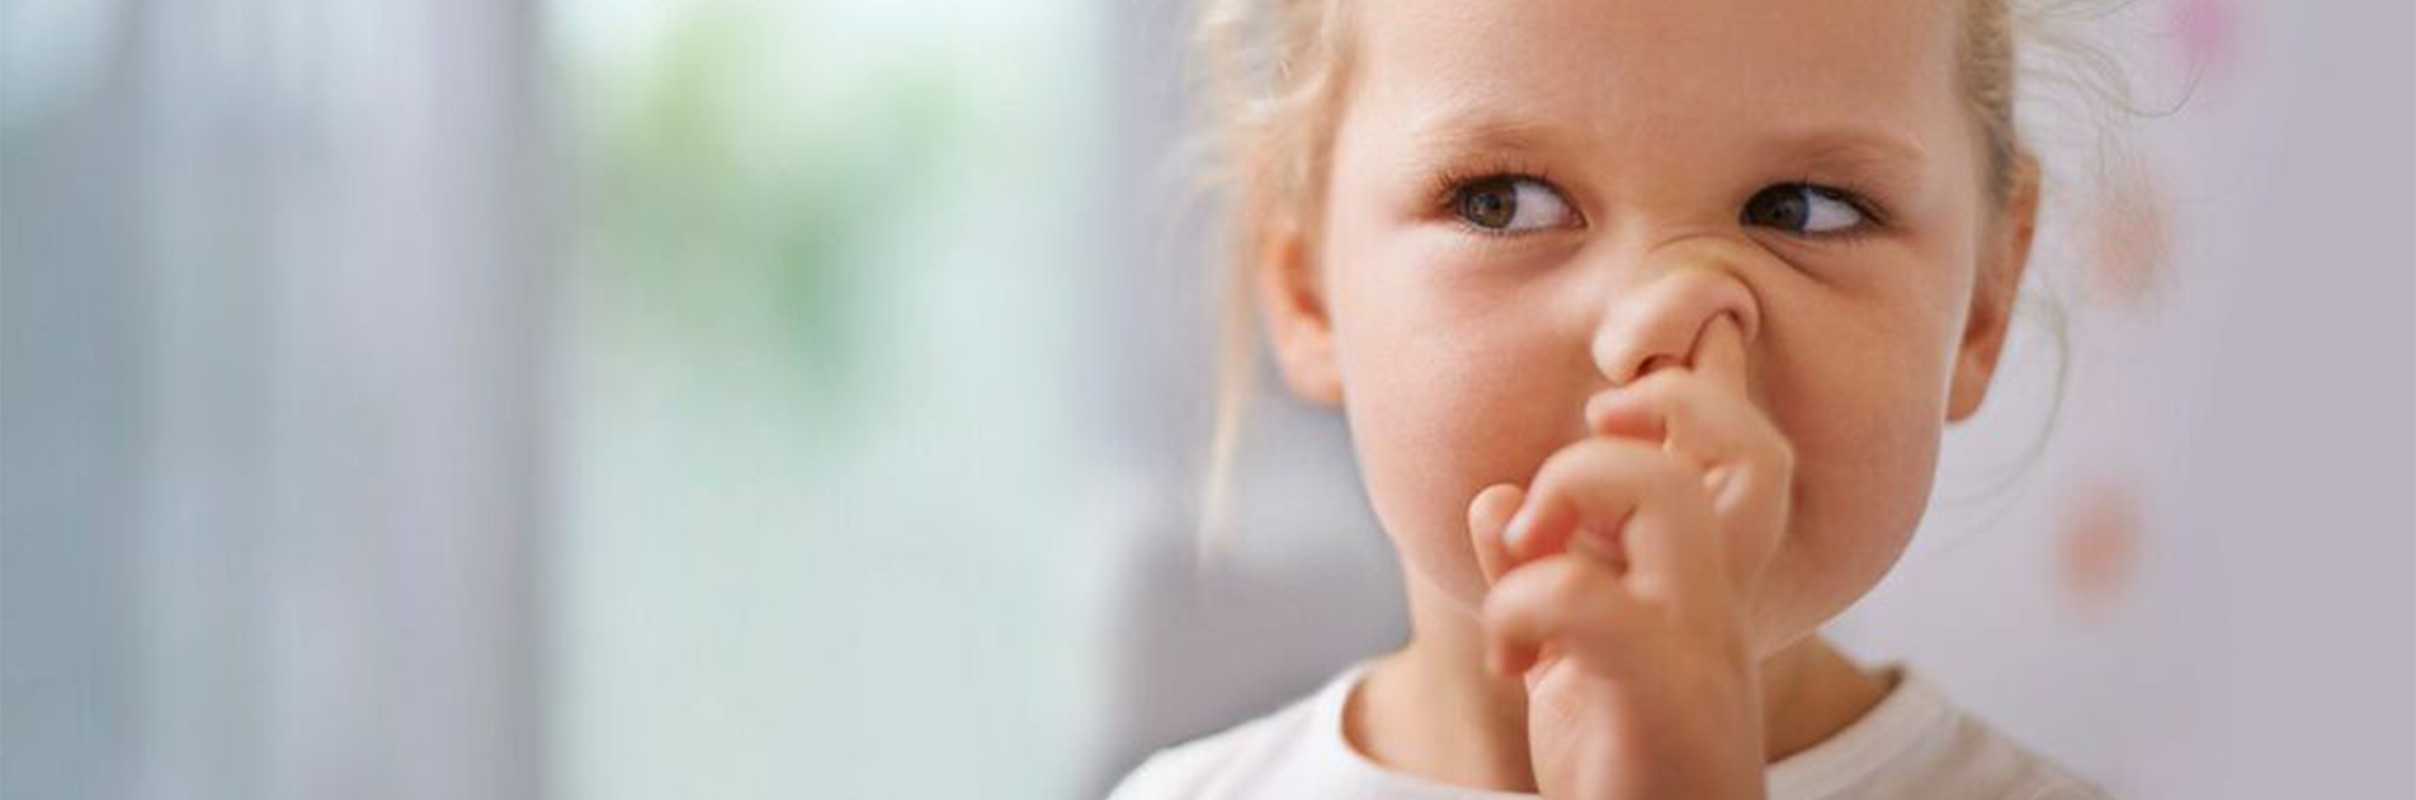 Ковыряние в носу: привычка, как отучить ребенка, избавление